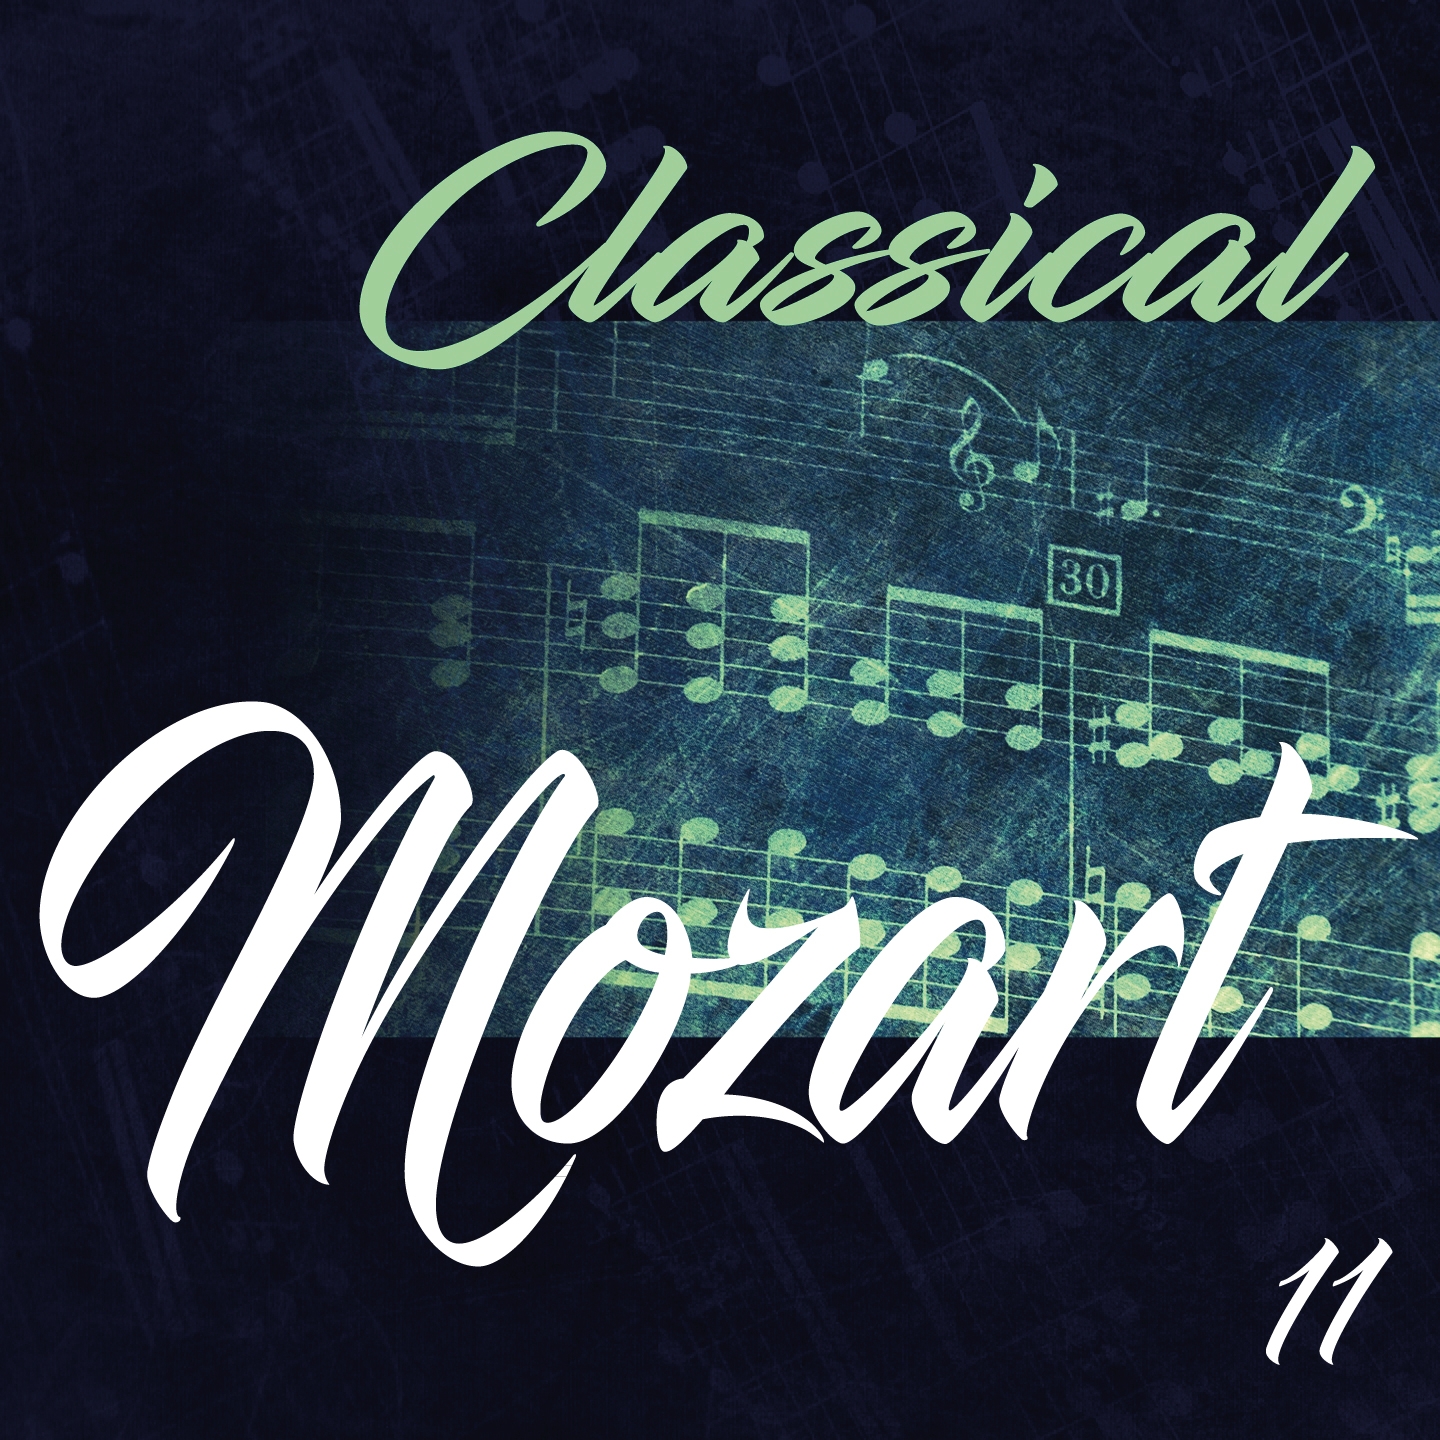 Classical Mozart 11